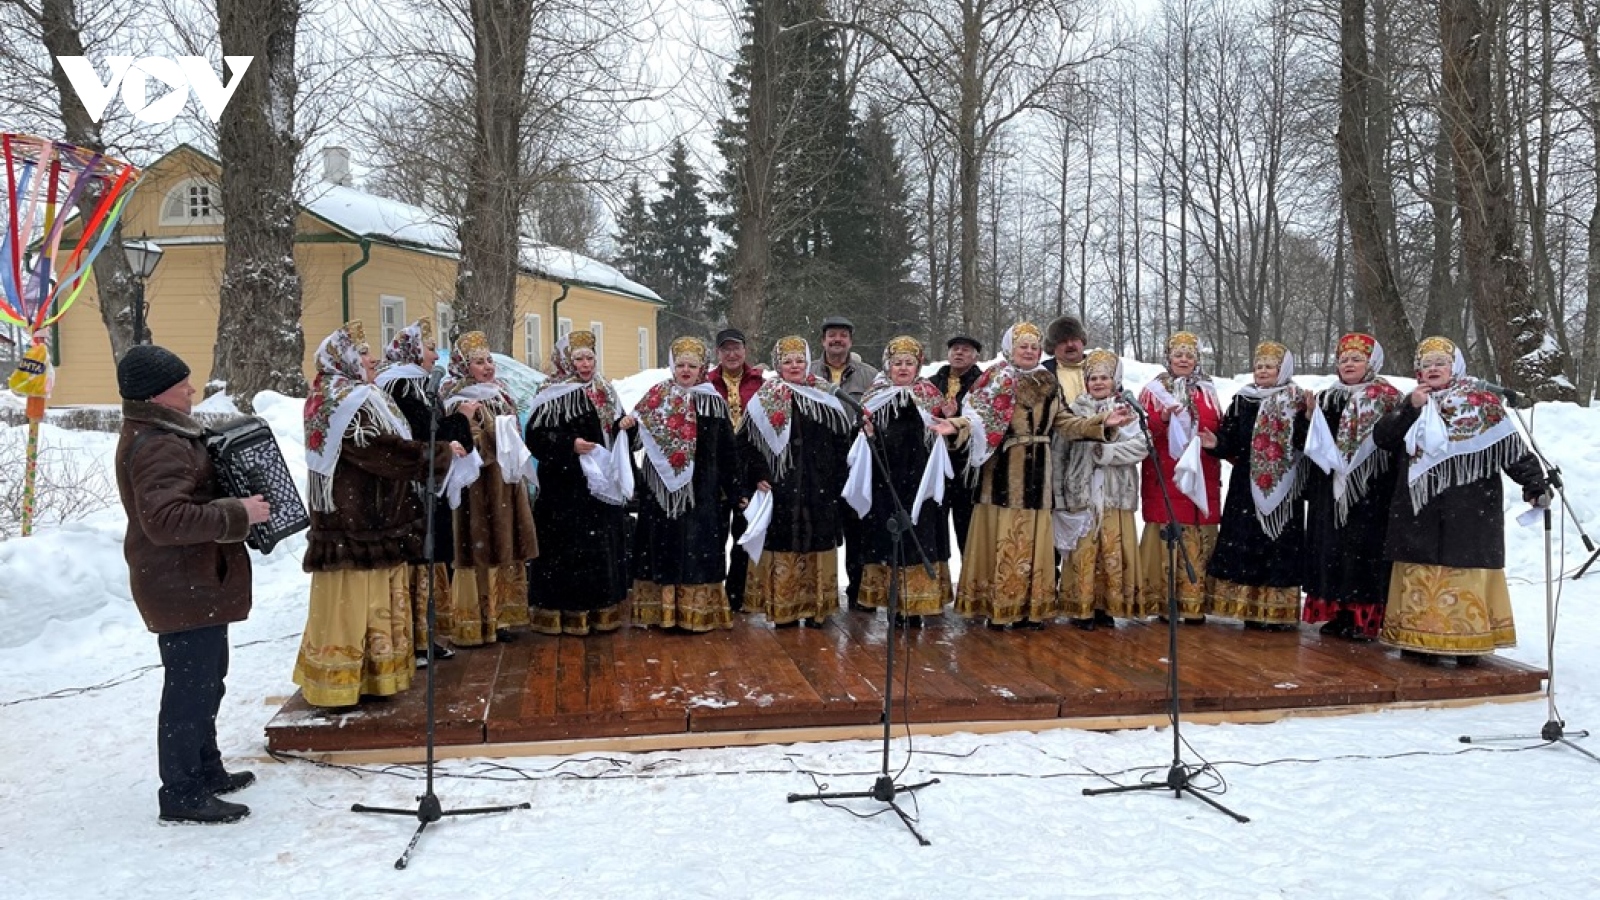 Lễ hội văn hóa dân gian mang mùa xuân đến cho người dân Nga